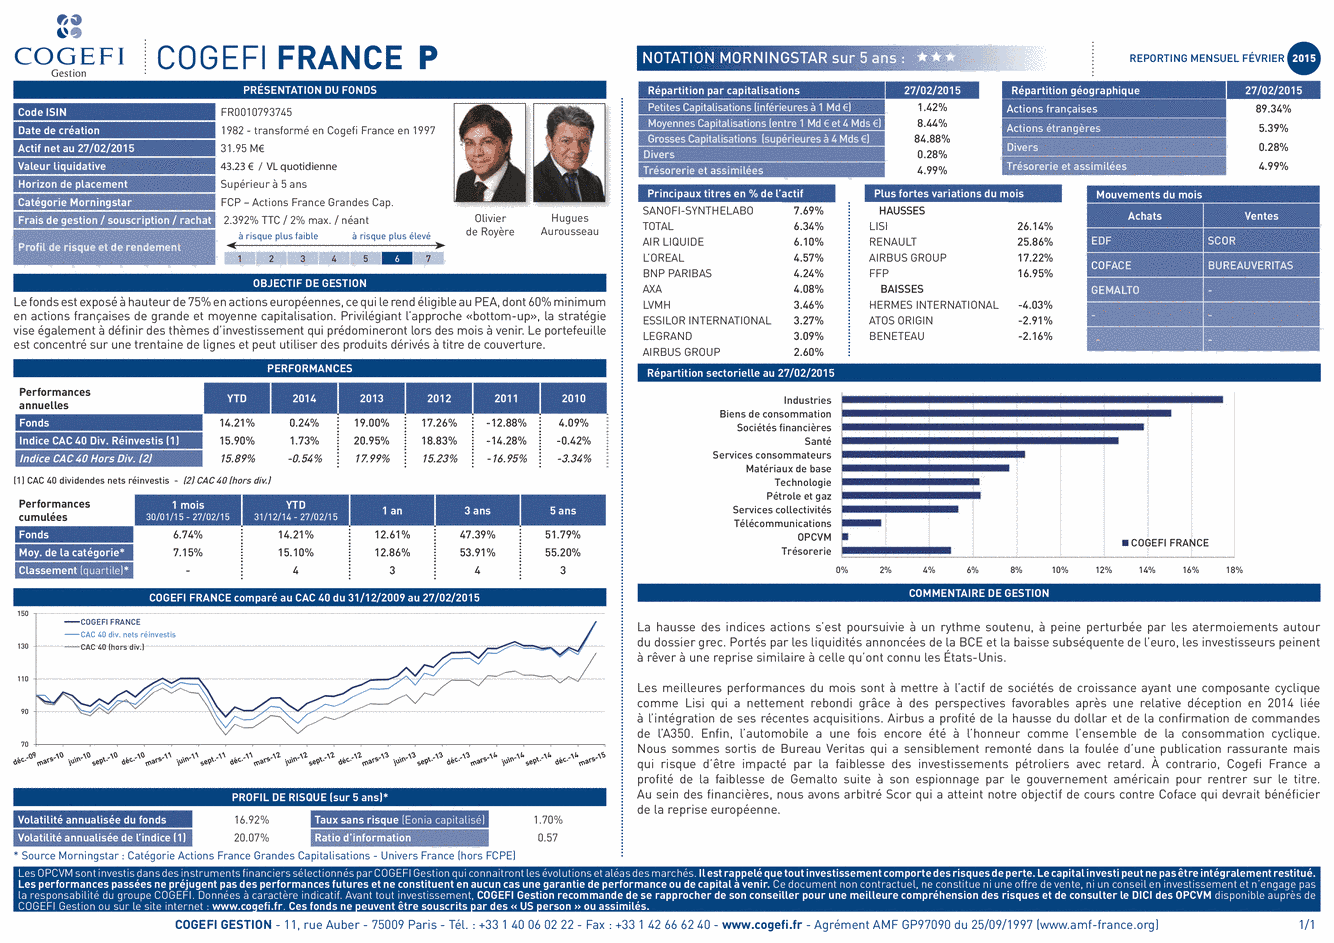 Fiche Produit Cogefi France - 27/02/2015 - Français